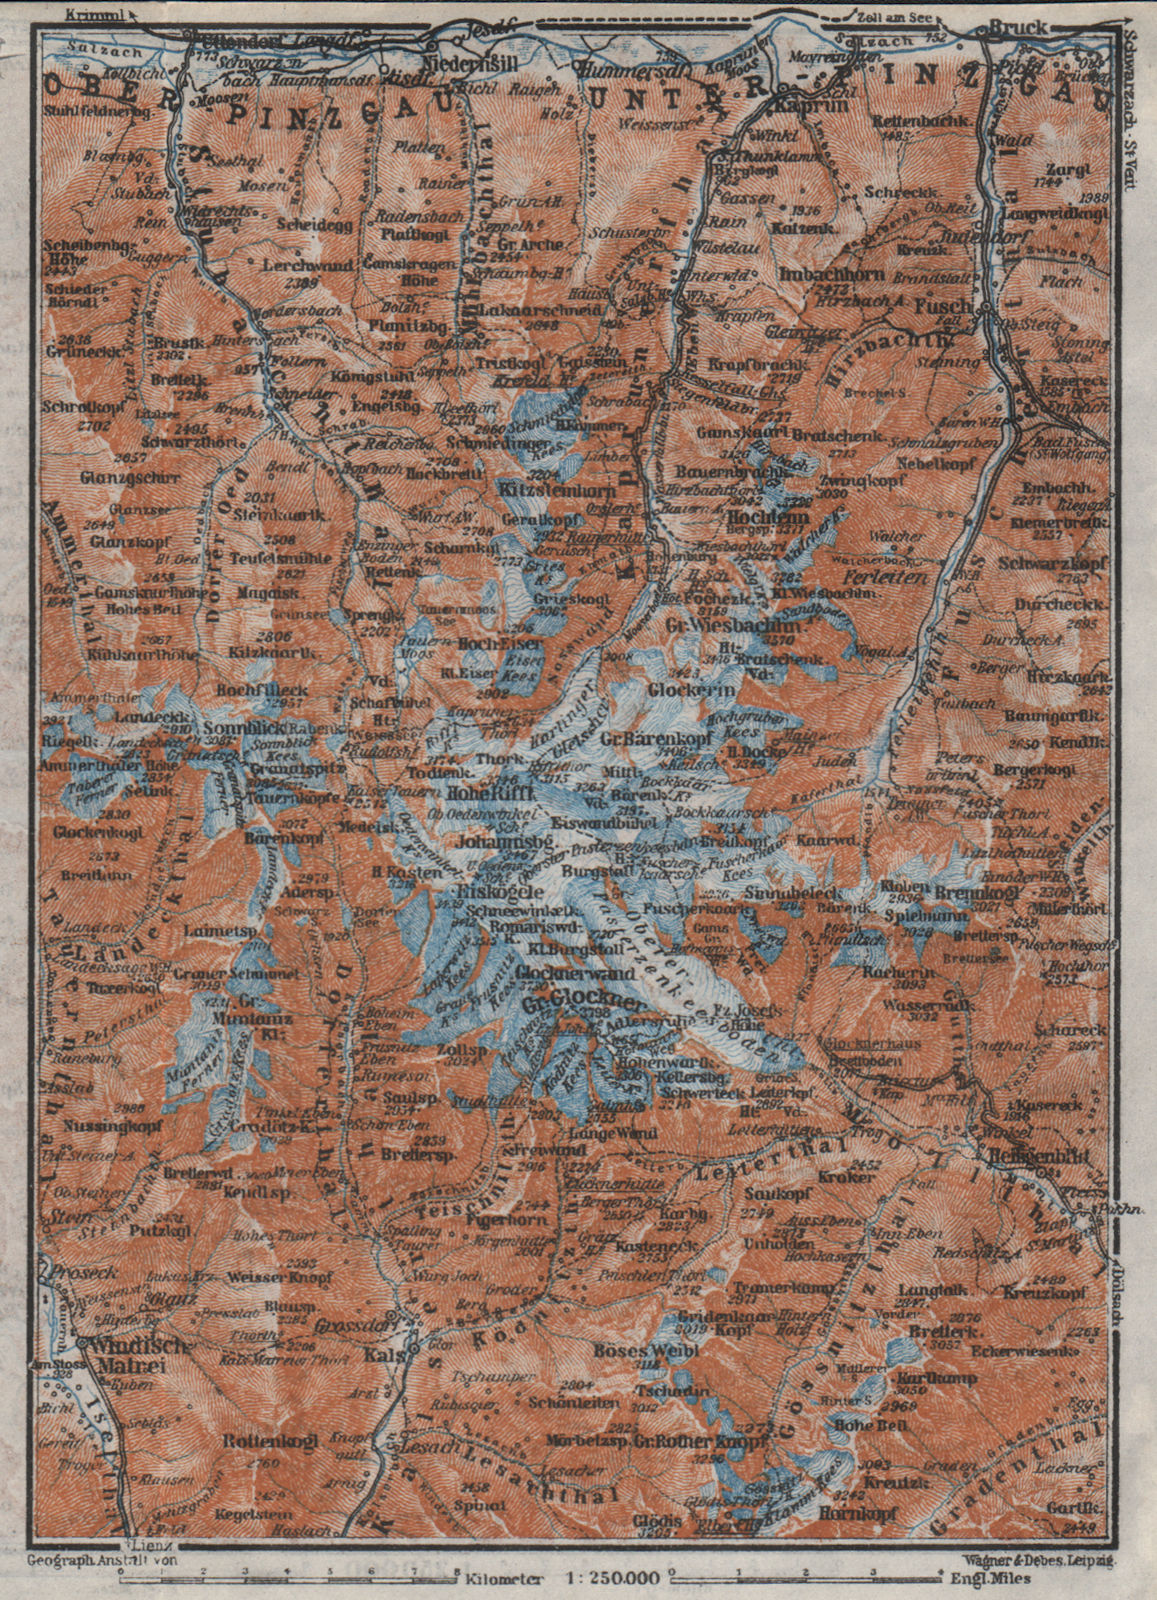 GLOCKNERGRUPPE. HOHE TAUERN. UNTERPINZGAU. Kaprun Matrei Grossdorf 1923 map